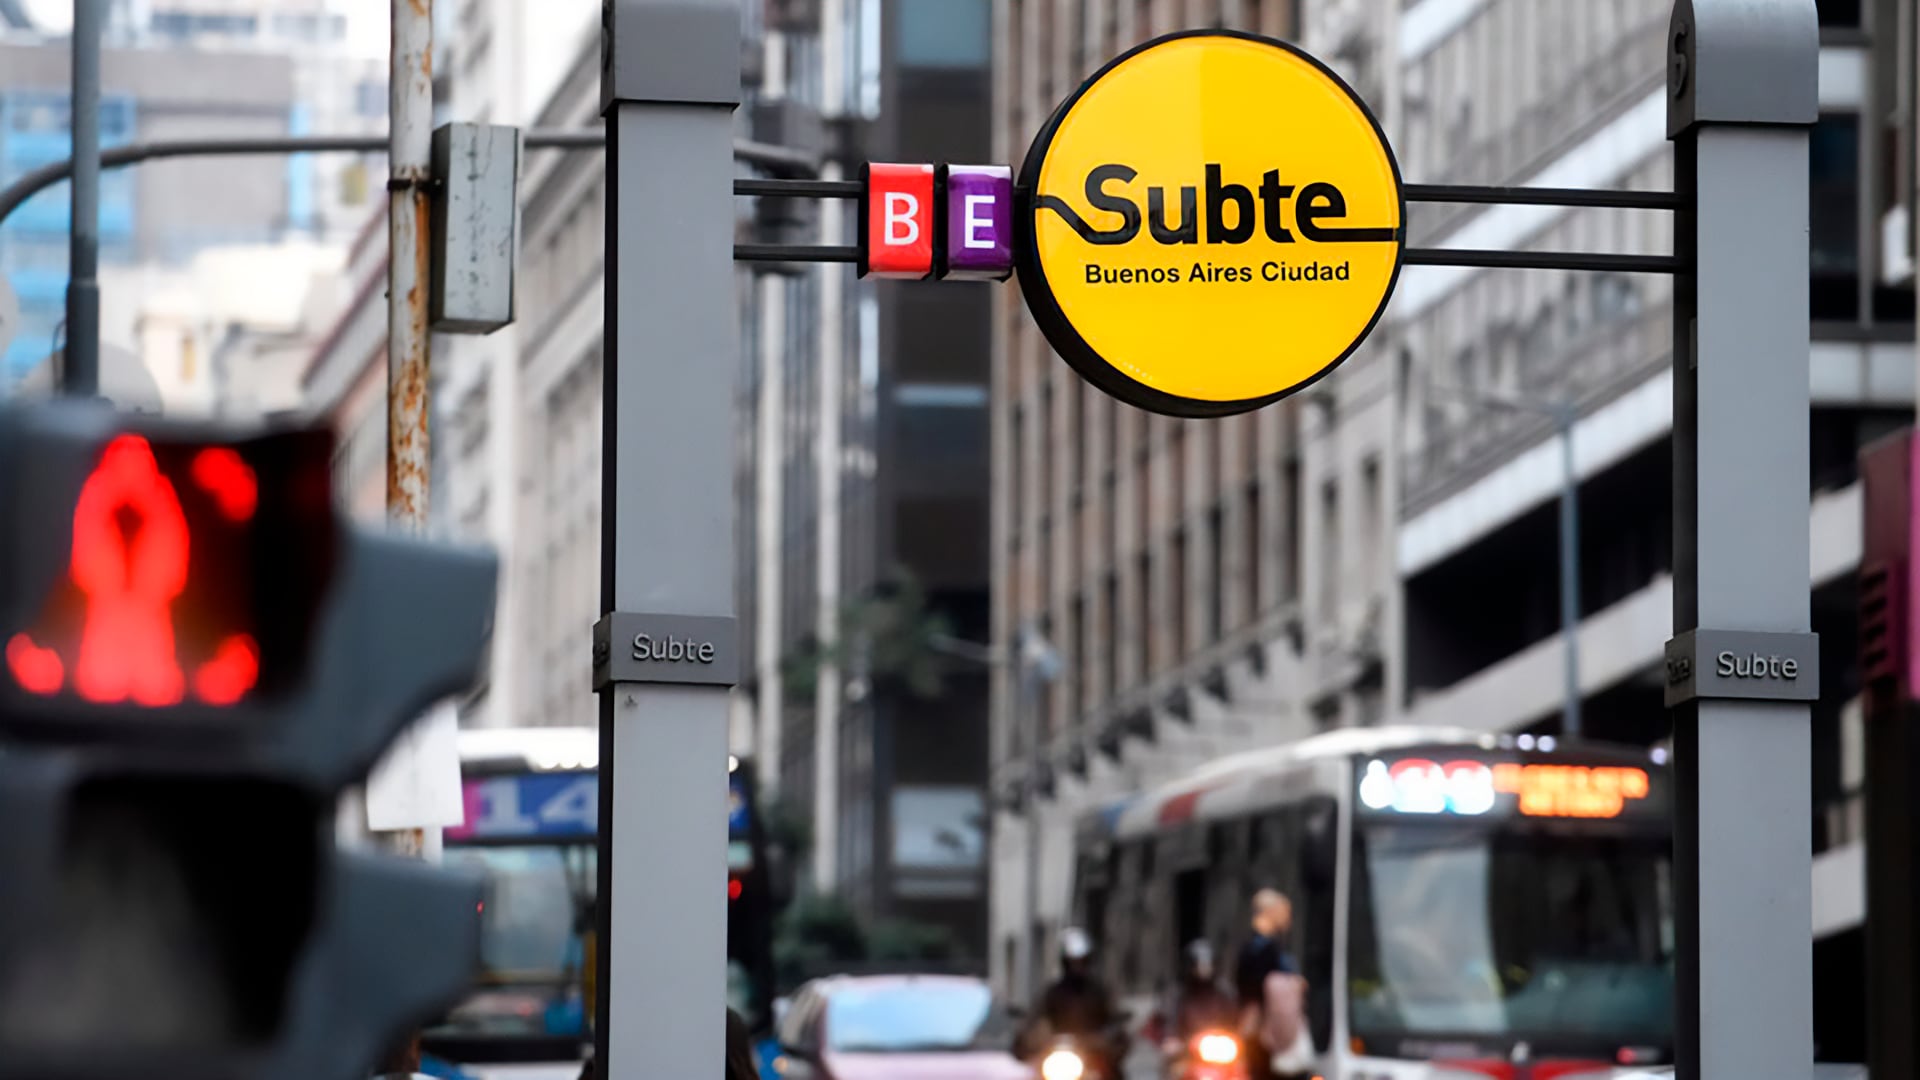 Subte CABA - Buenos Aires - servicios públicos